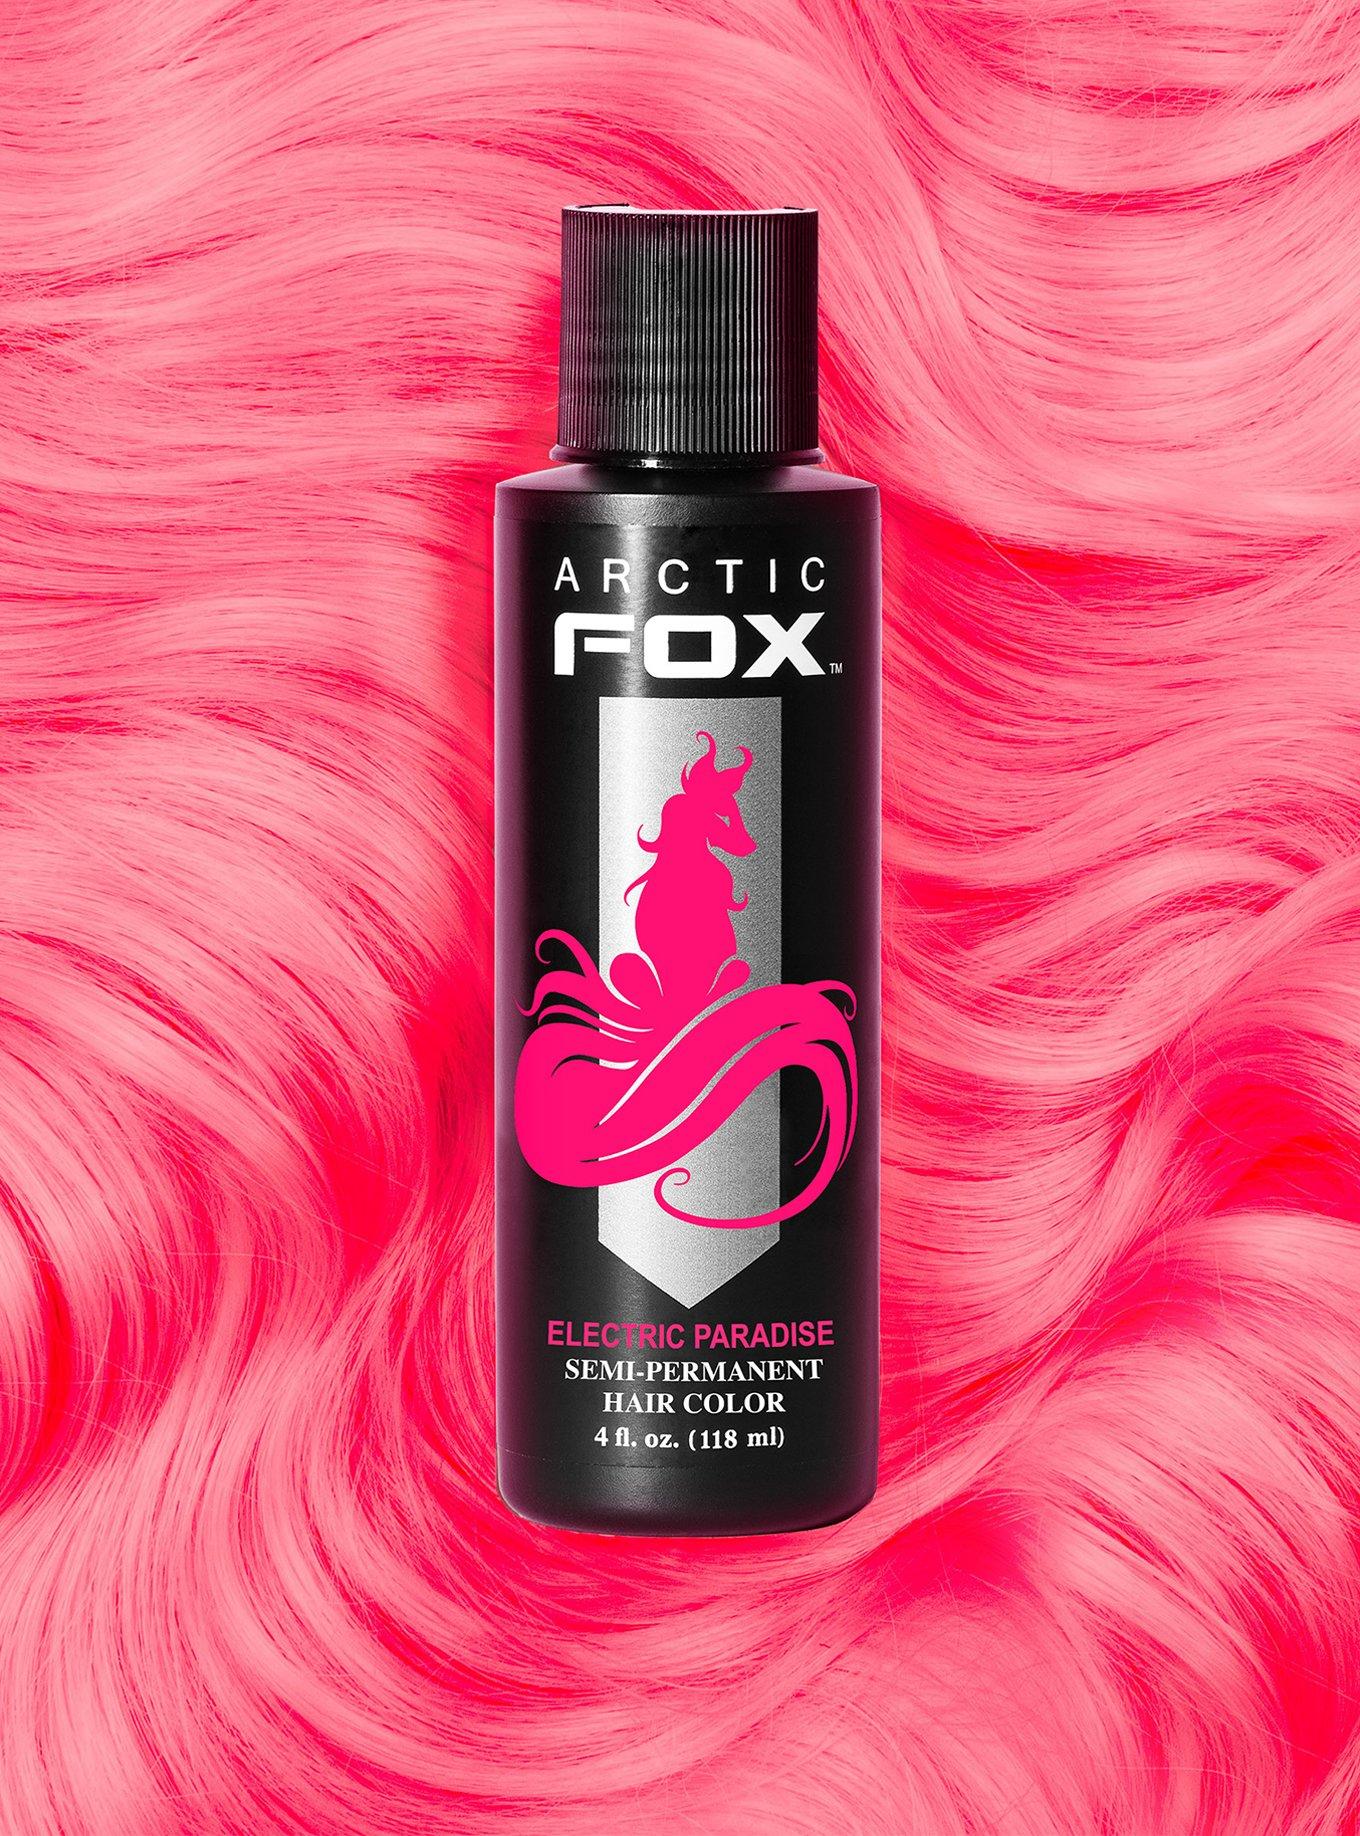 Arctic Fox Semi-Permanent Electric Paradise Hair Dye | Hot Topic